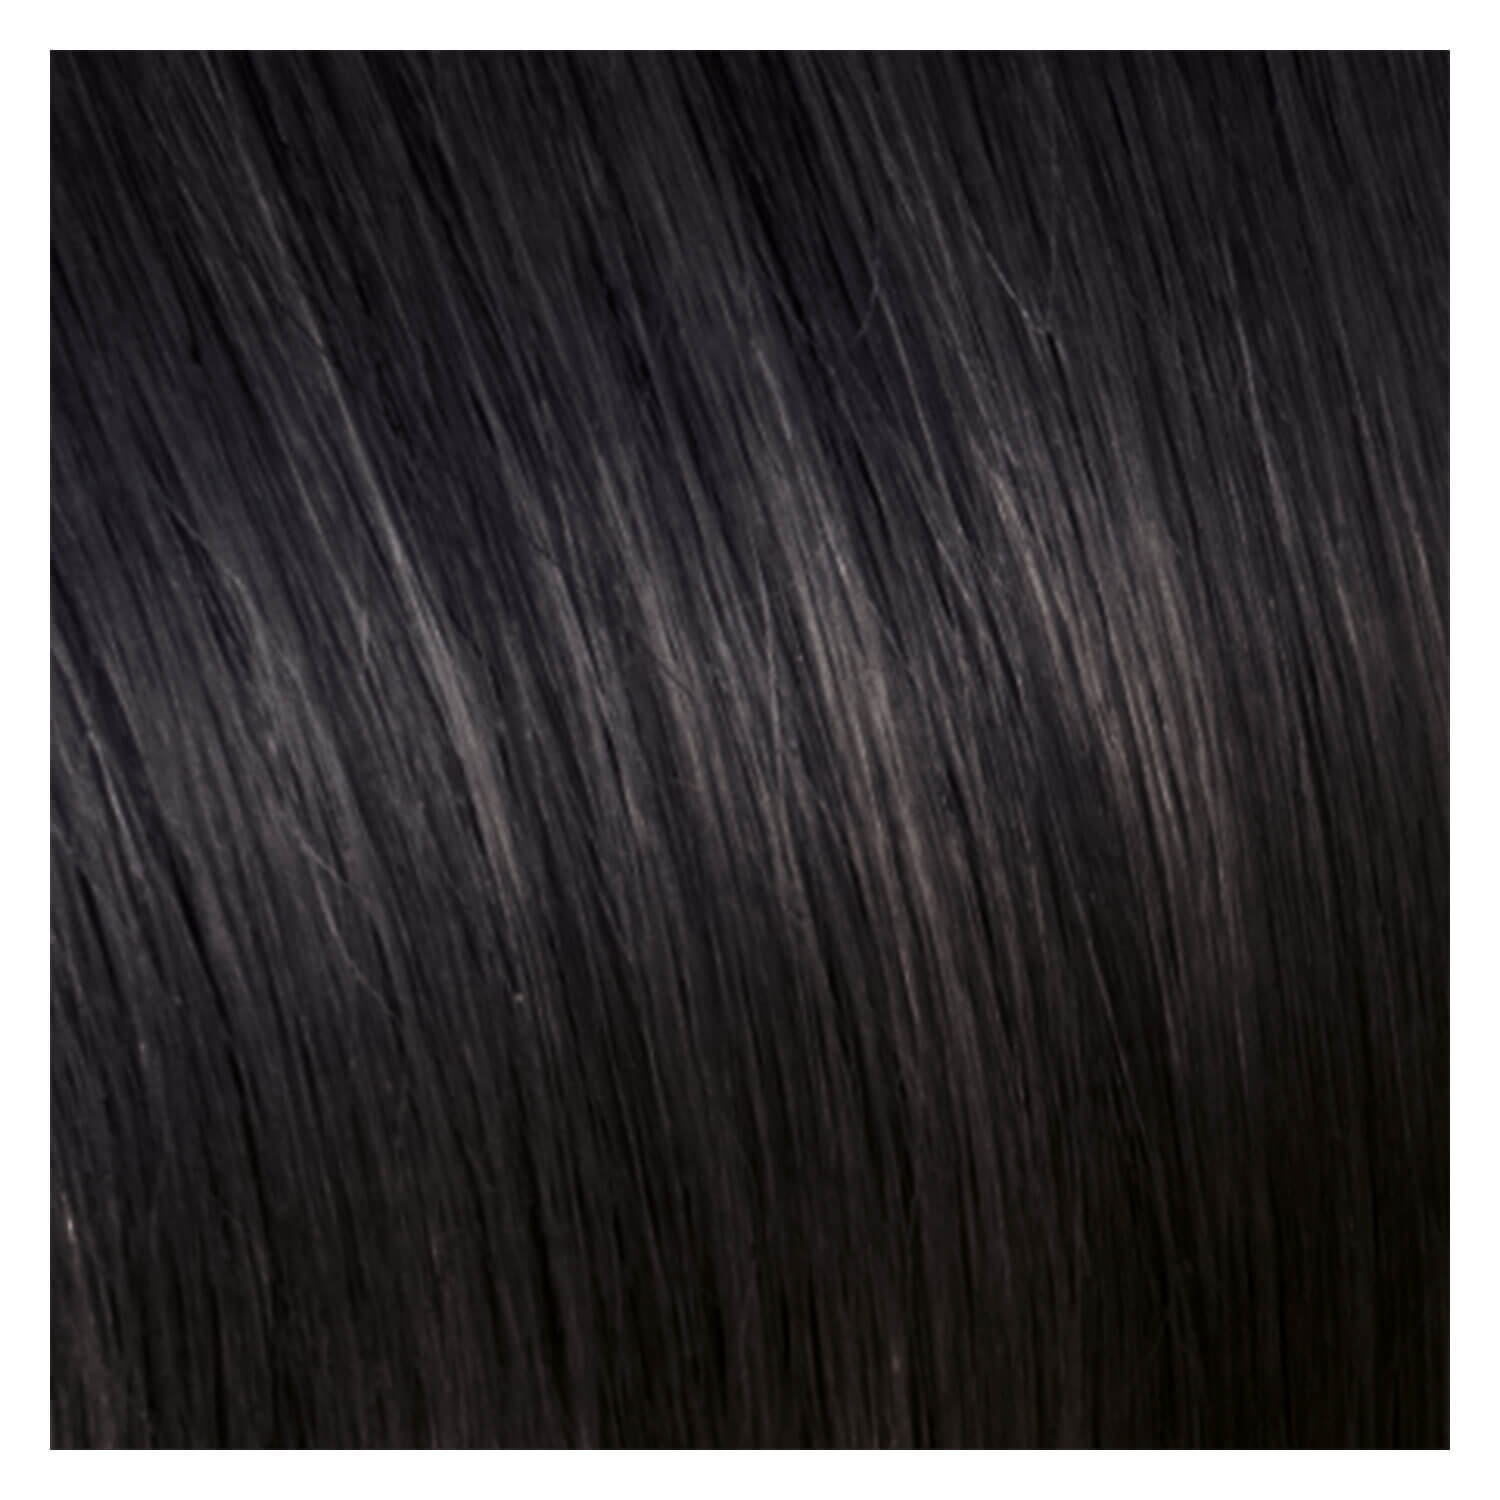 Produktbild von SHE Clip In-System Hair Extensions - 9-teiliges Set 2 Dunkles Kastanienbraun 50/55cm